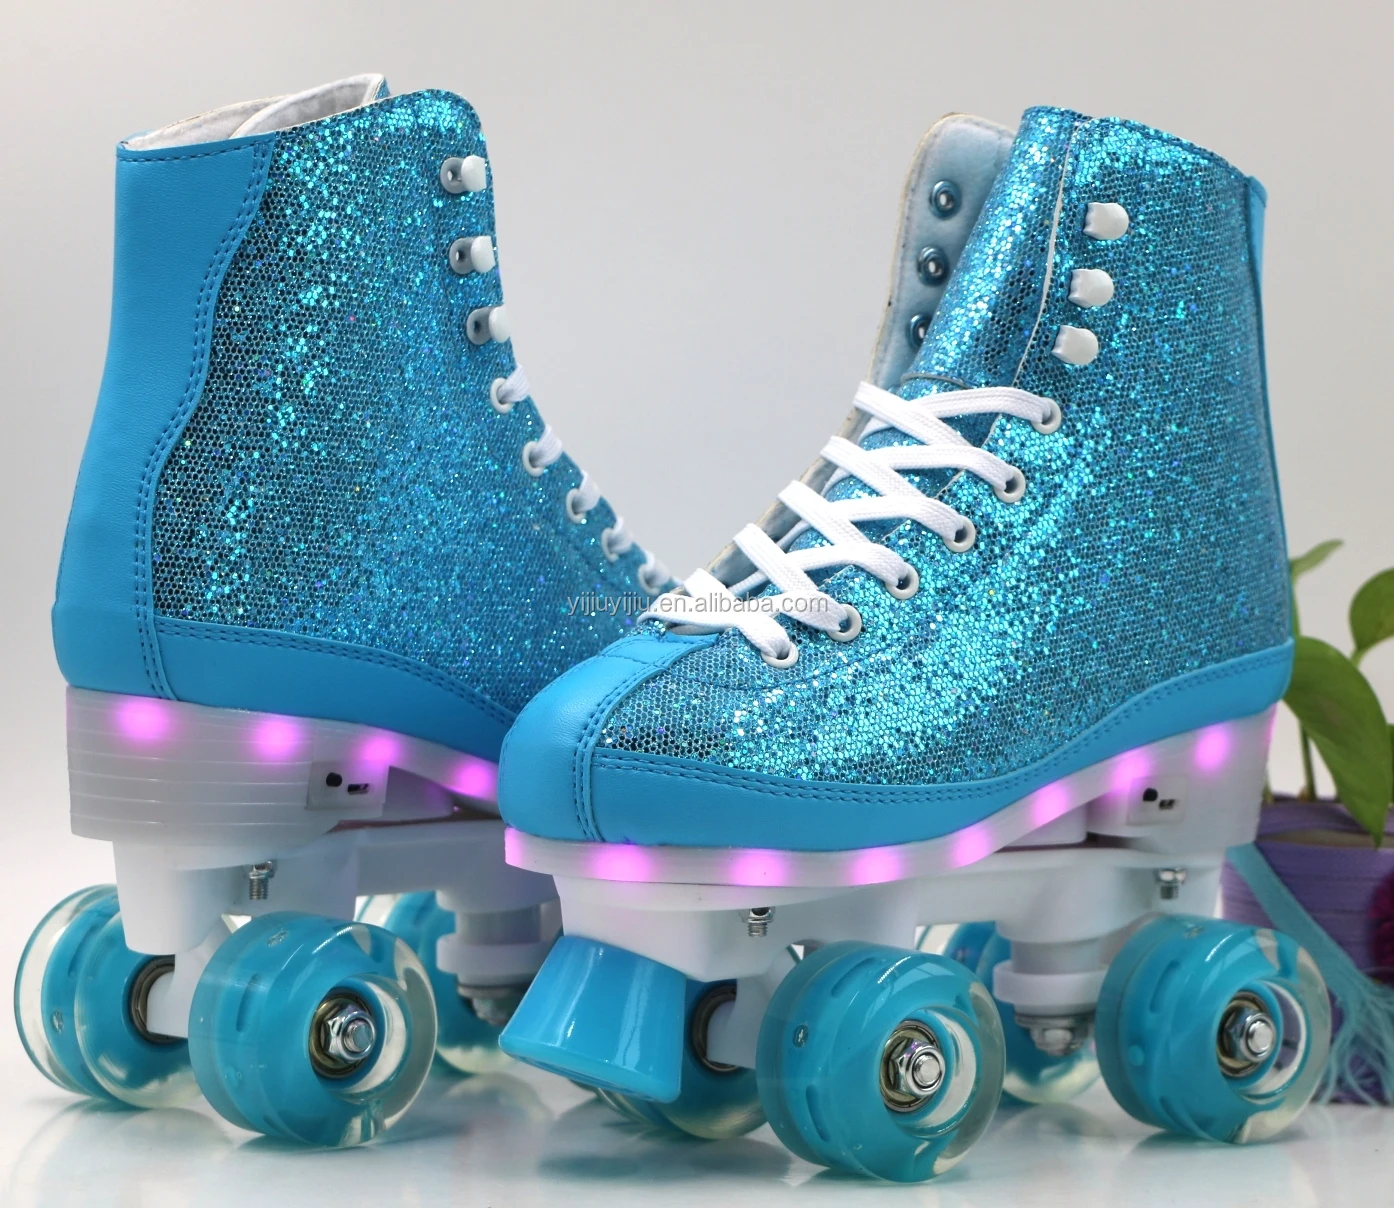 

Cheap Custom Adjustable Patines Soy Luna Roller Skates 4 Wheels Inline Roller Skate For Children, Quad Roller Skates